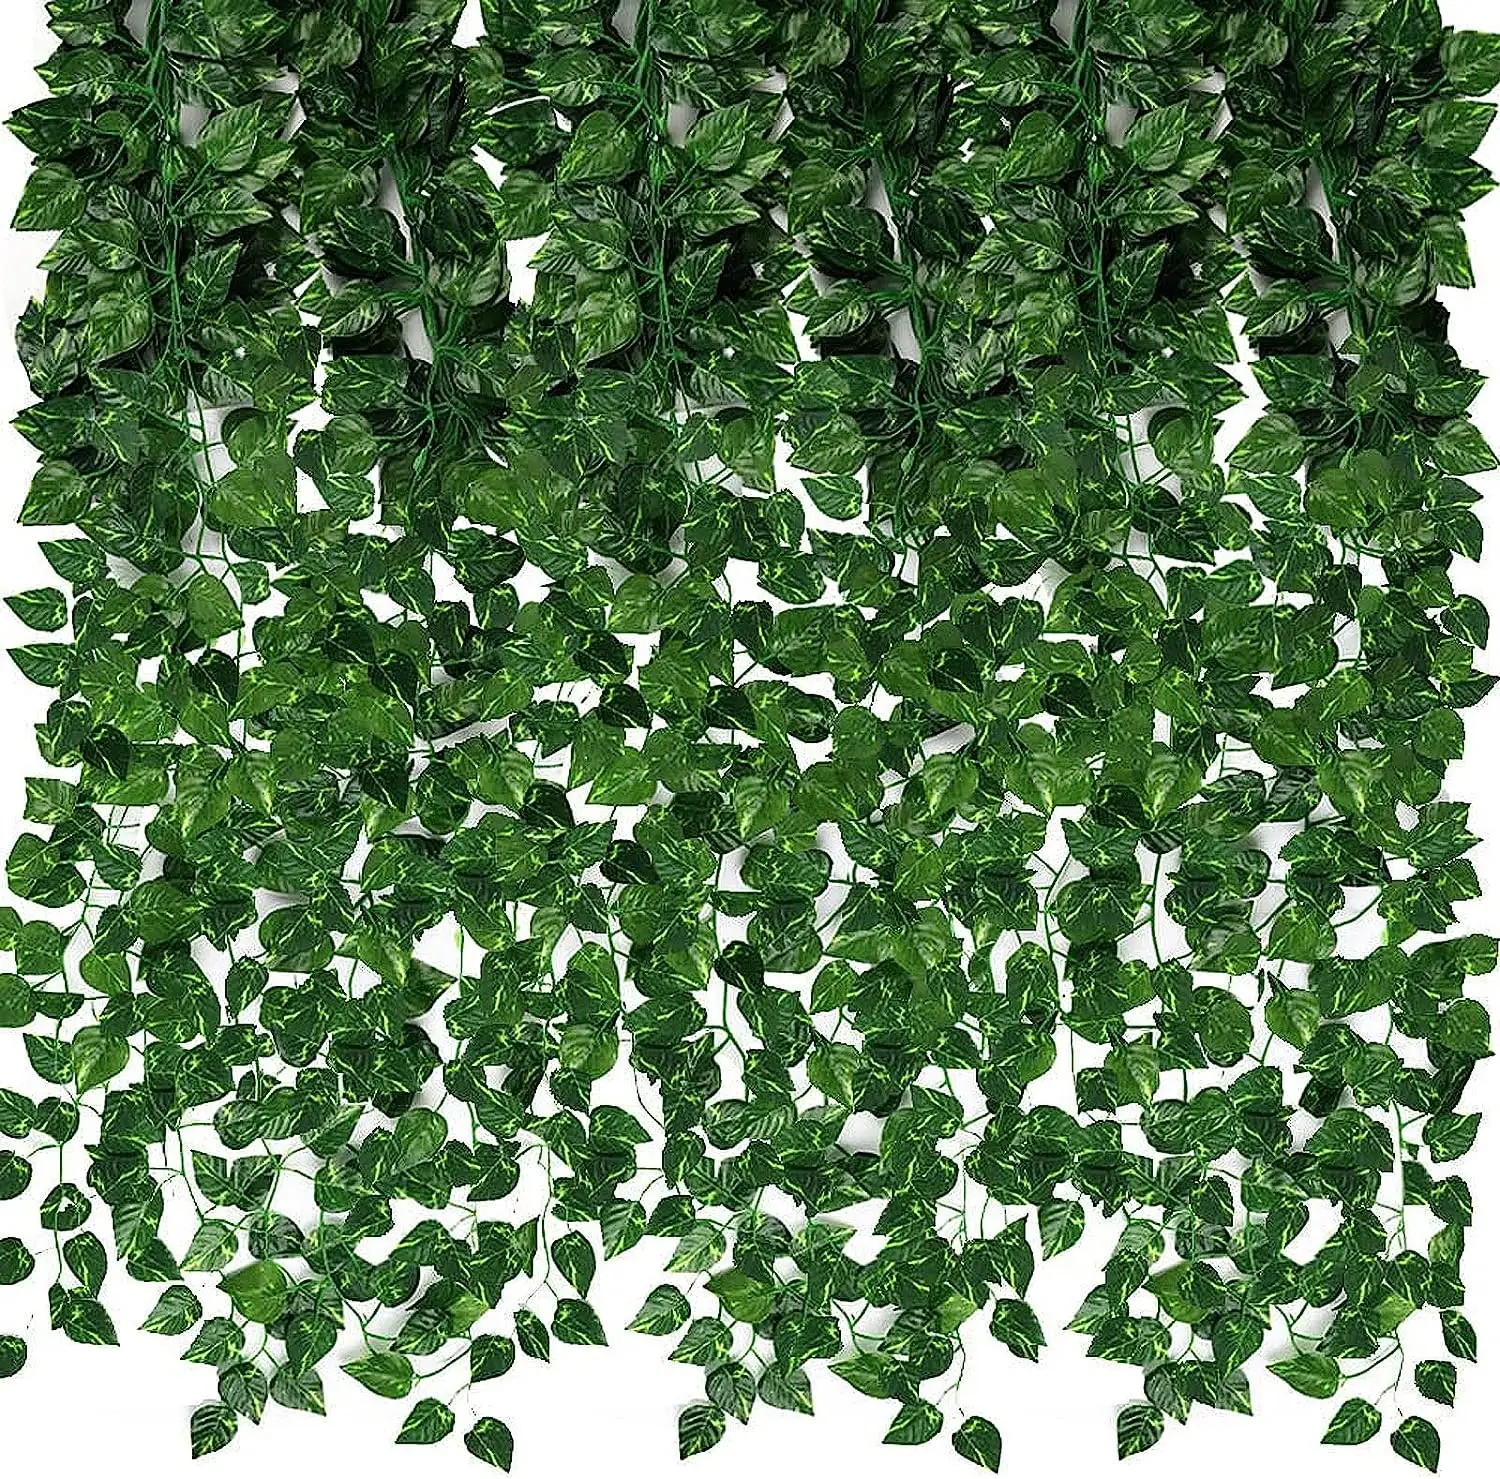 人工アイビー緑ガーランド偽のつる植物をぶら下げ背景寝室の壁の装飾ジャングルテーマパーティー結婚式の緑の葉